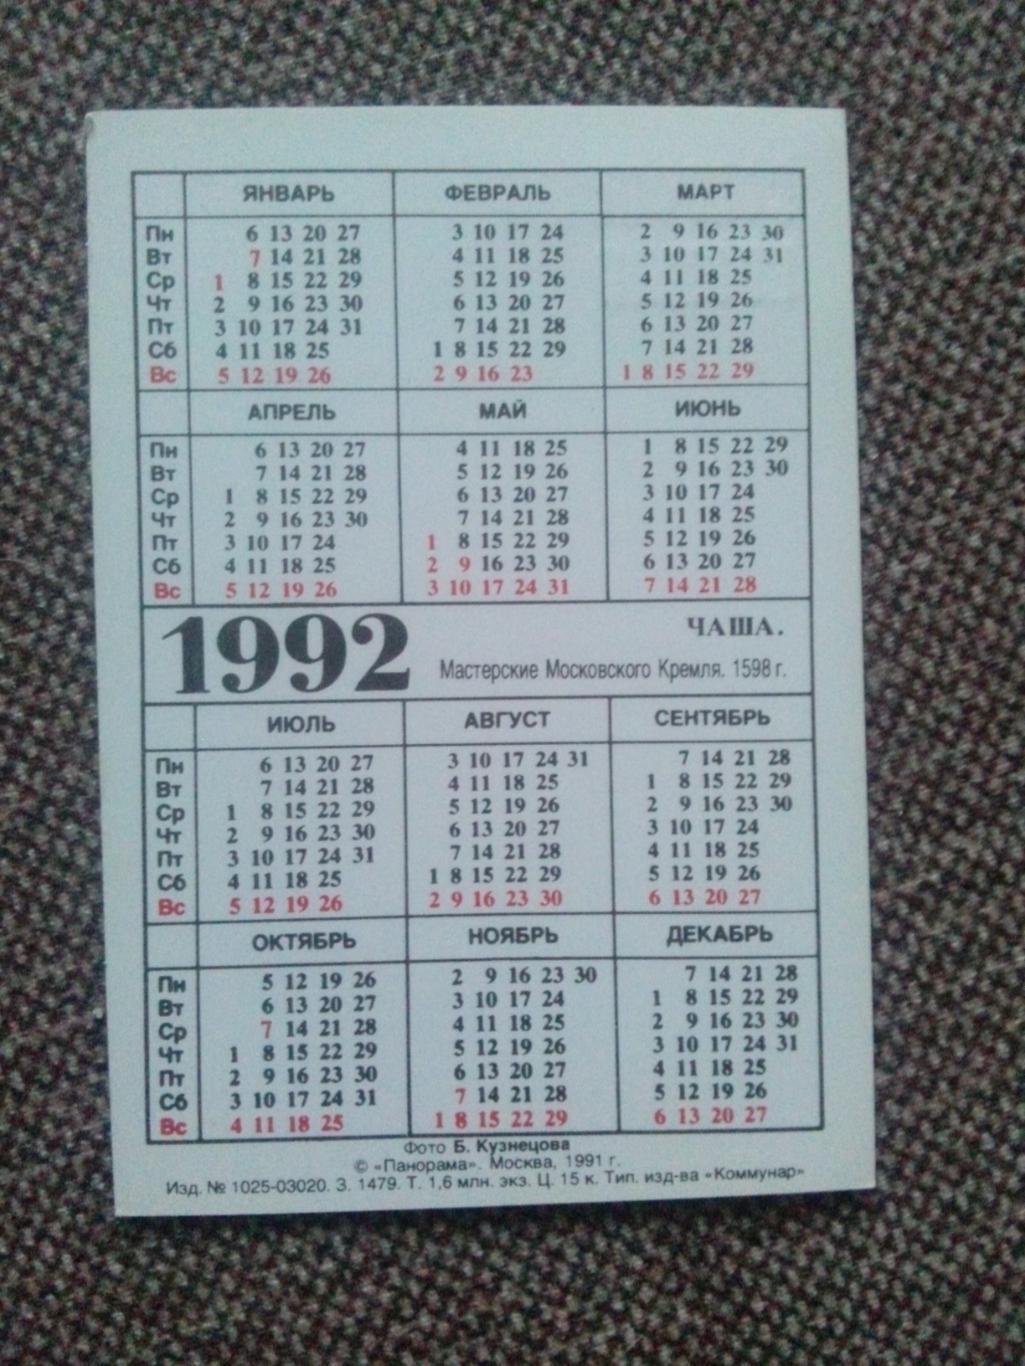 Карманный календарик : Сокровища Кремля - Чаша 1992 г. ( Москва Кремль ) 1